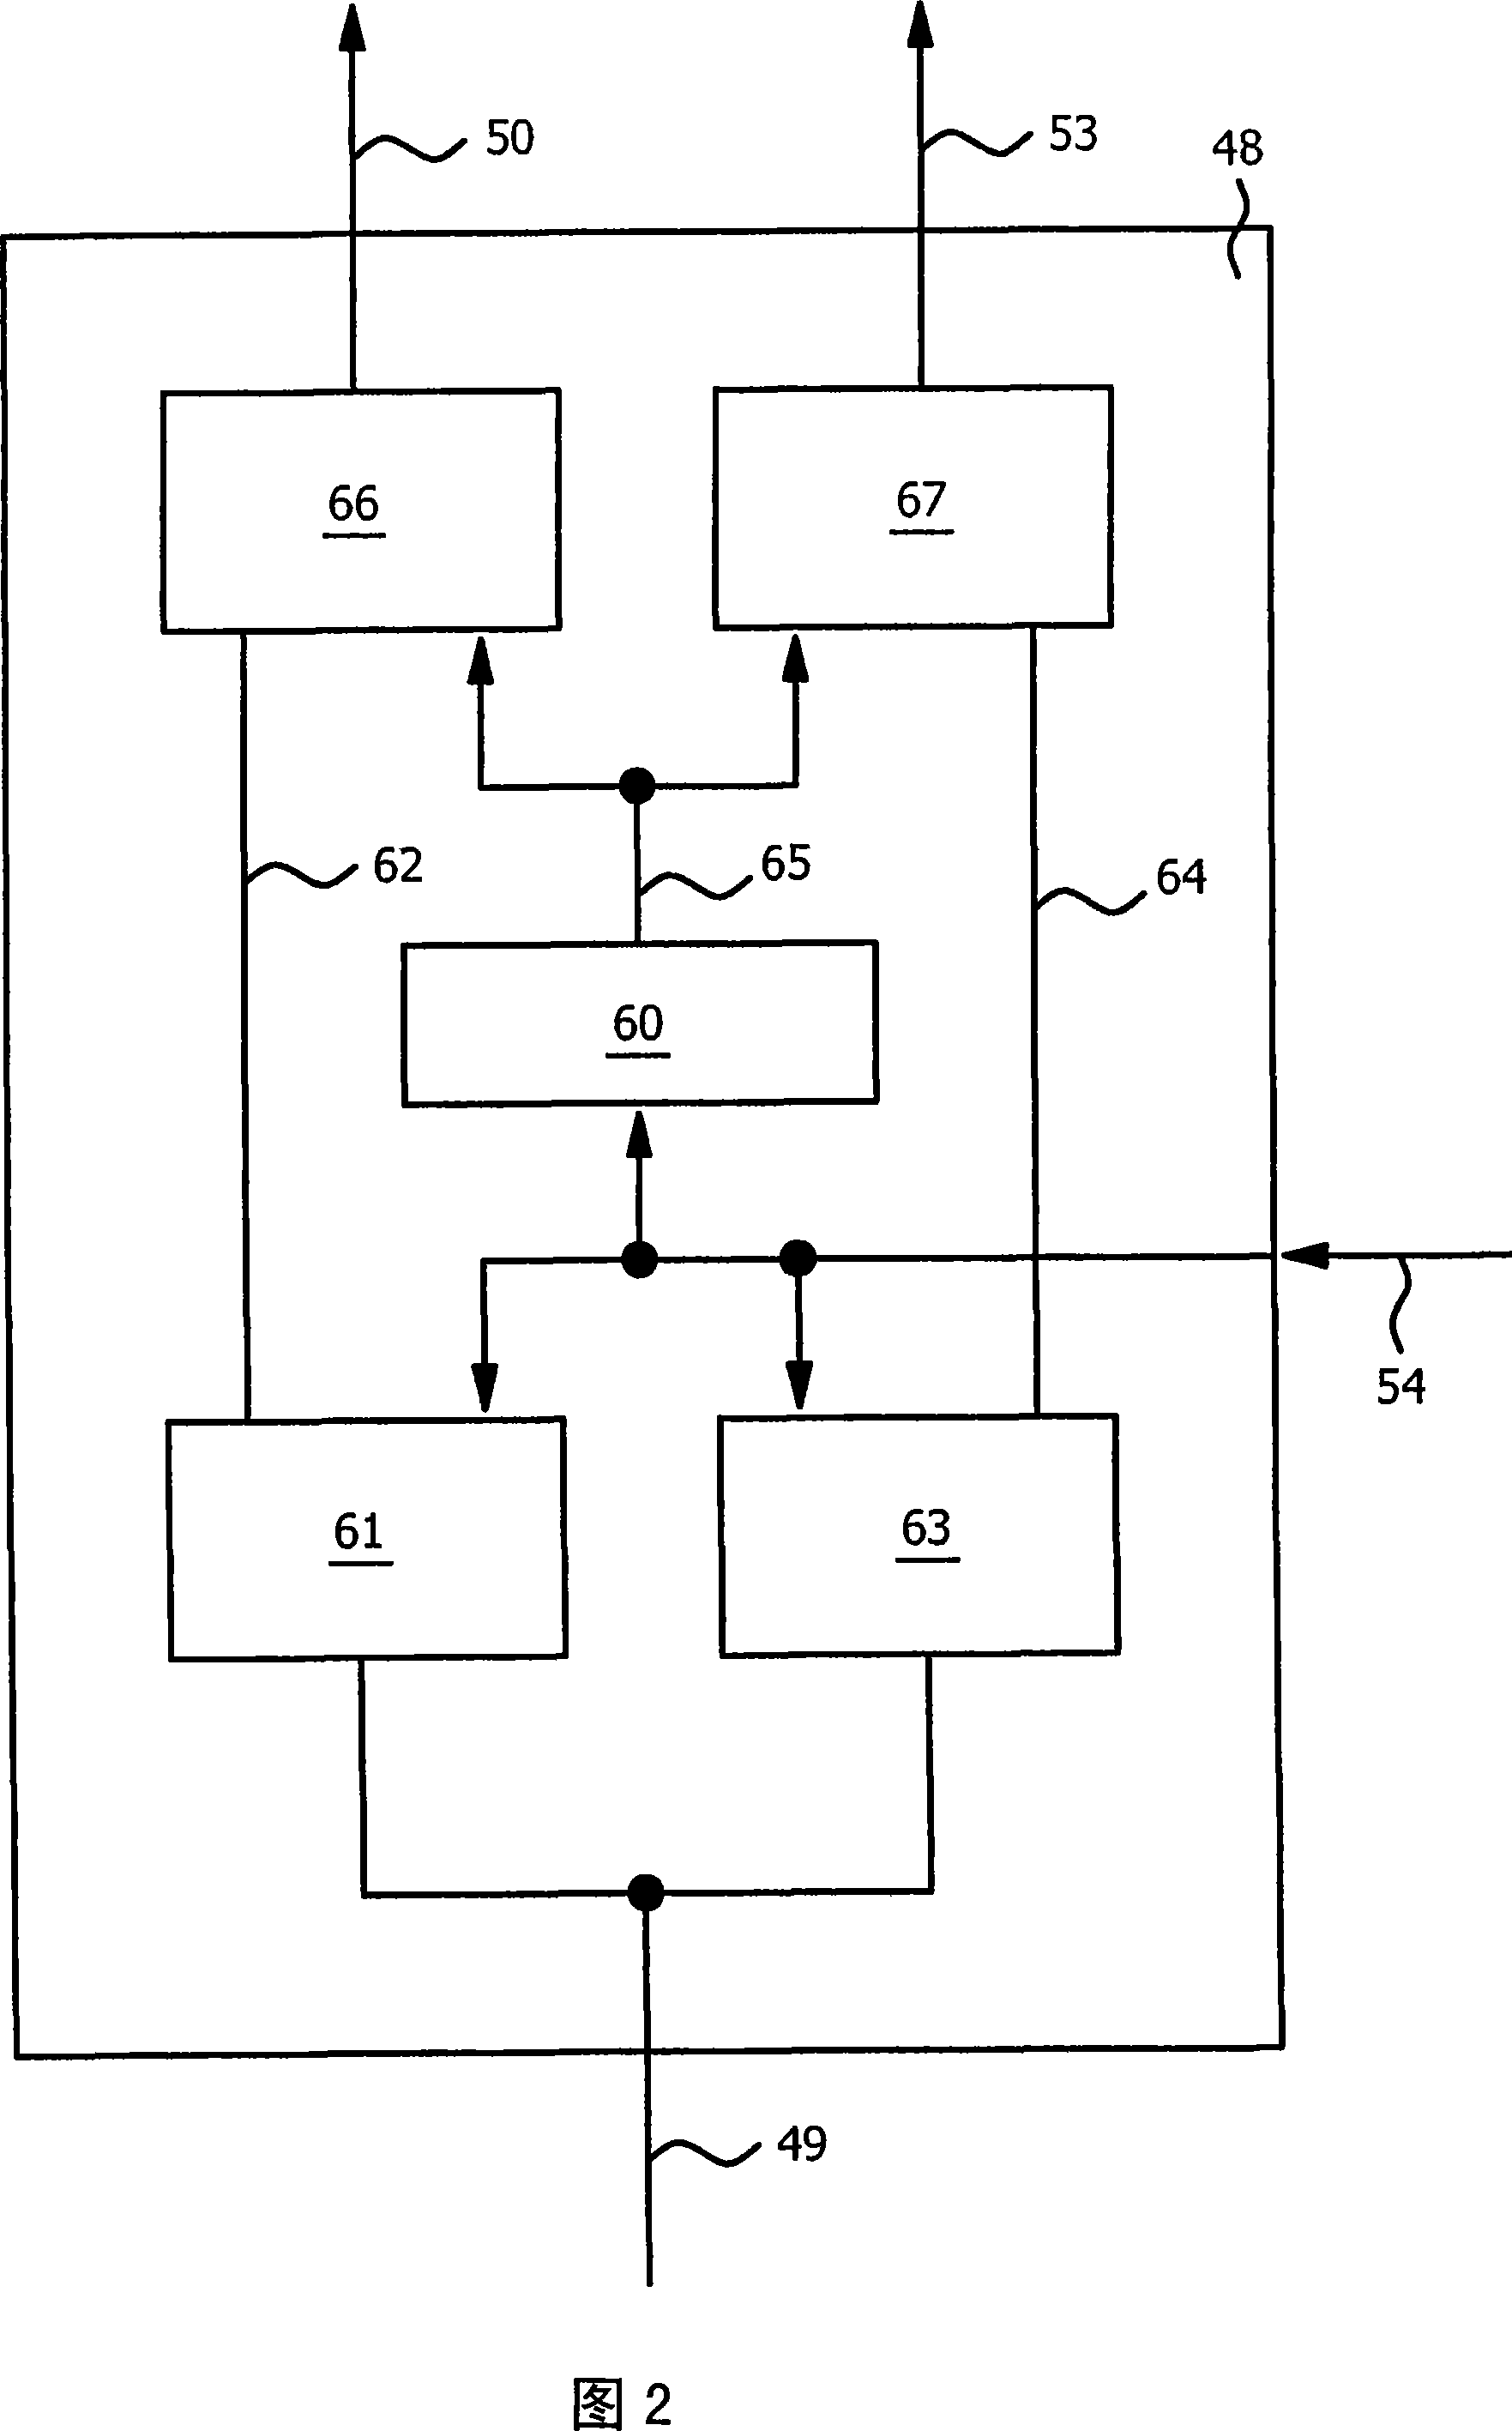 Transmitter apparatus